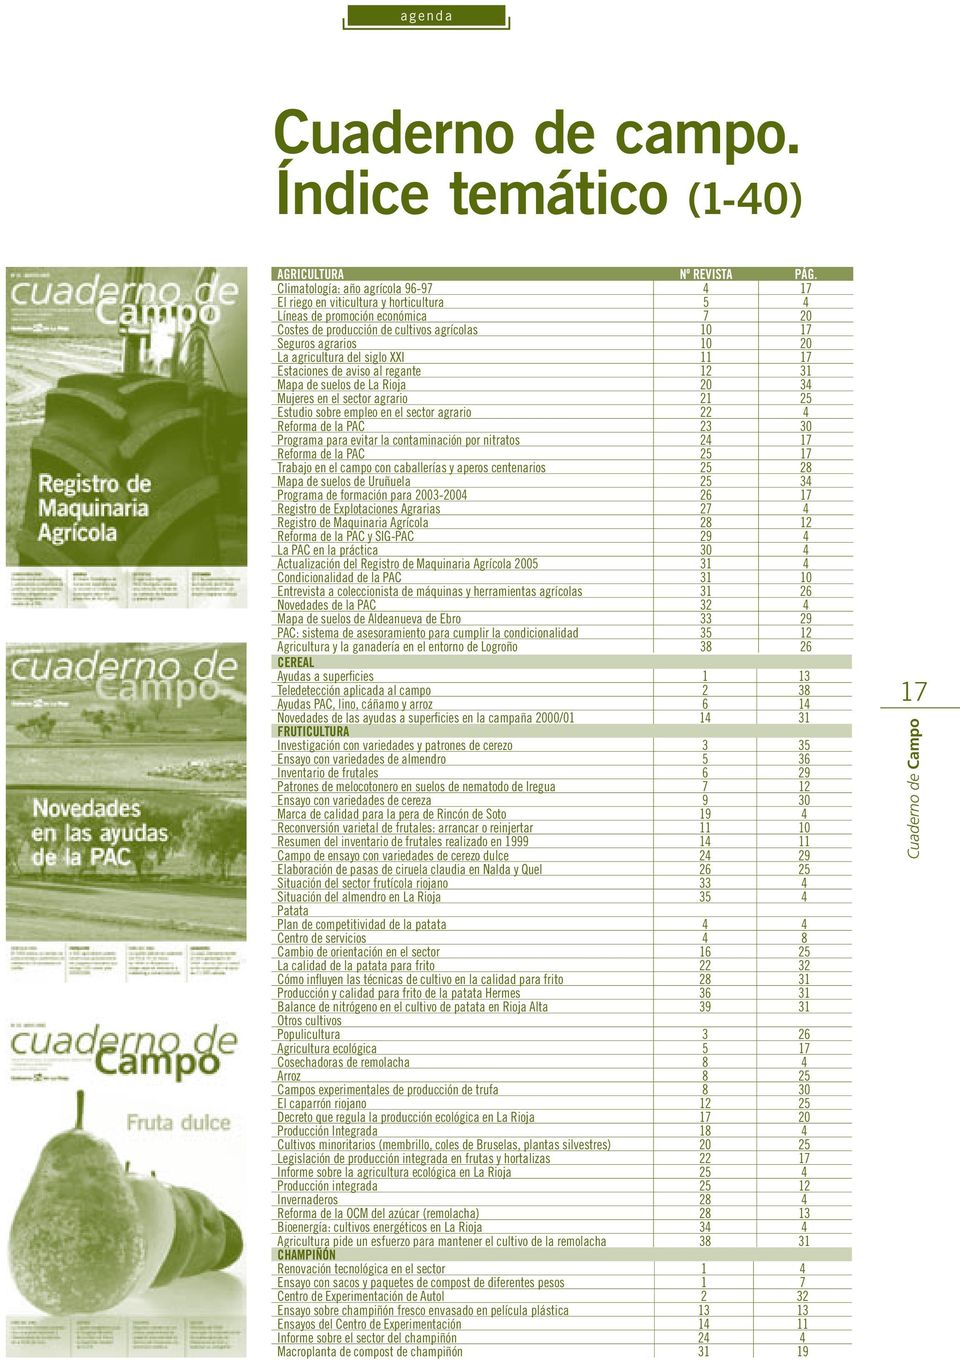 agricultura del siglo XXI 11 17 Estaciones de aviso al regante 12 31 Mapa de suelos de La Rioja 20 34 Mujeres en el sector agrario 21 25 Estudio sobre empleo en el sector agrario 22 4 Reforma de la